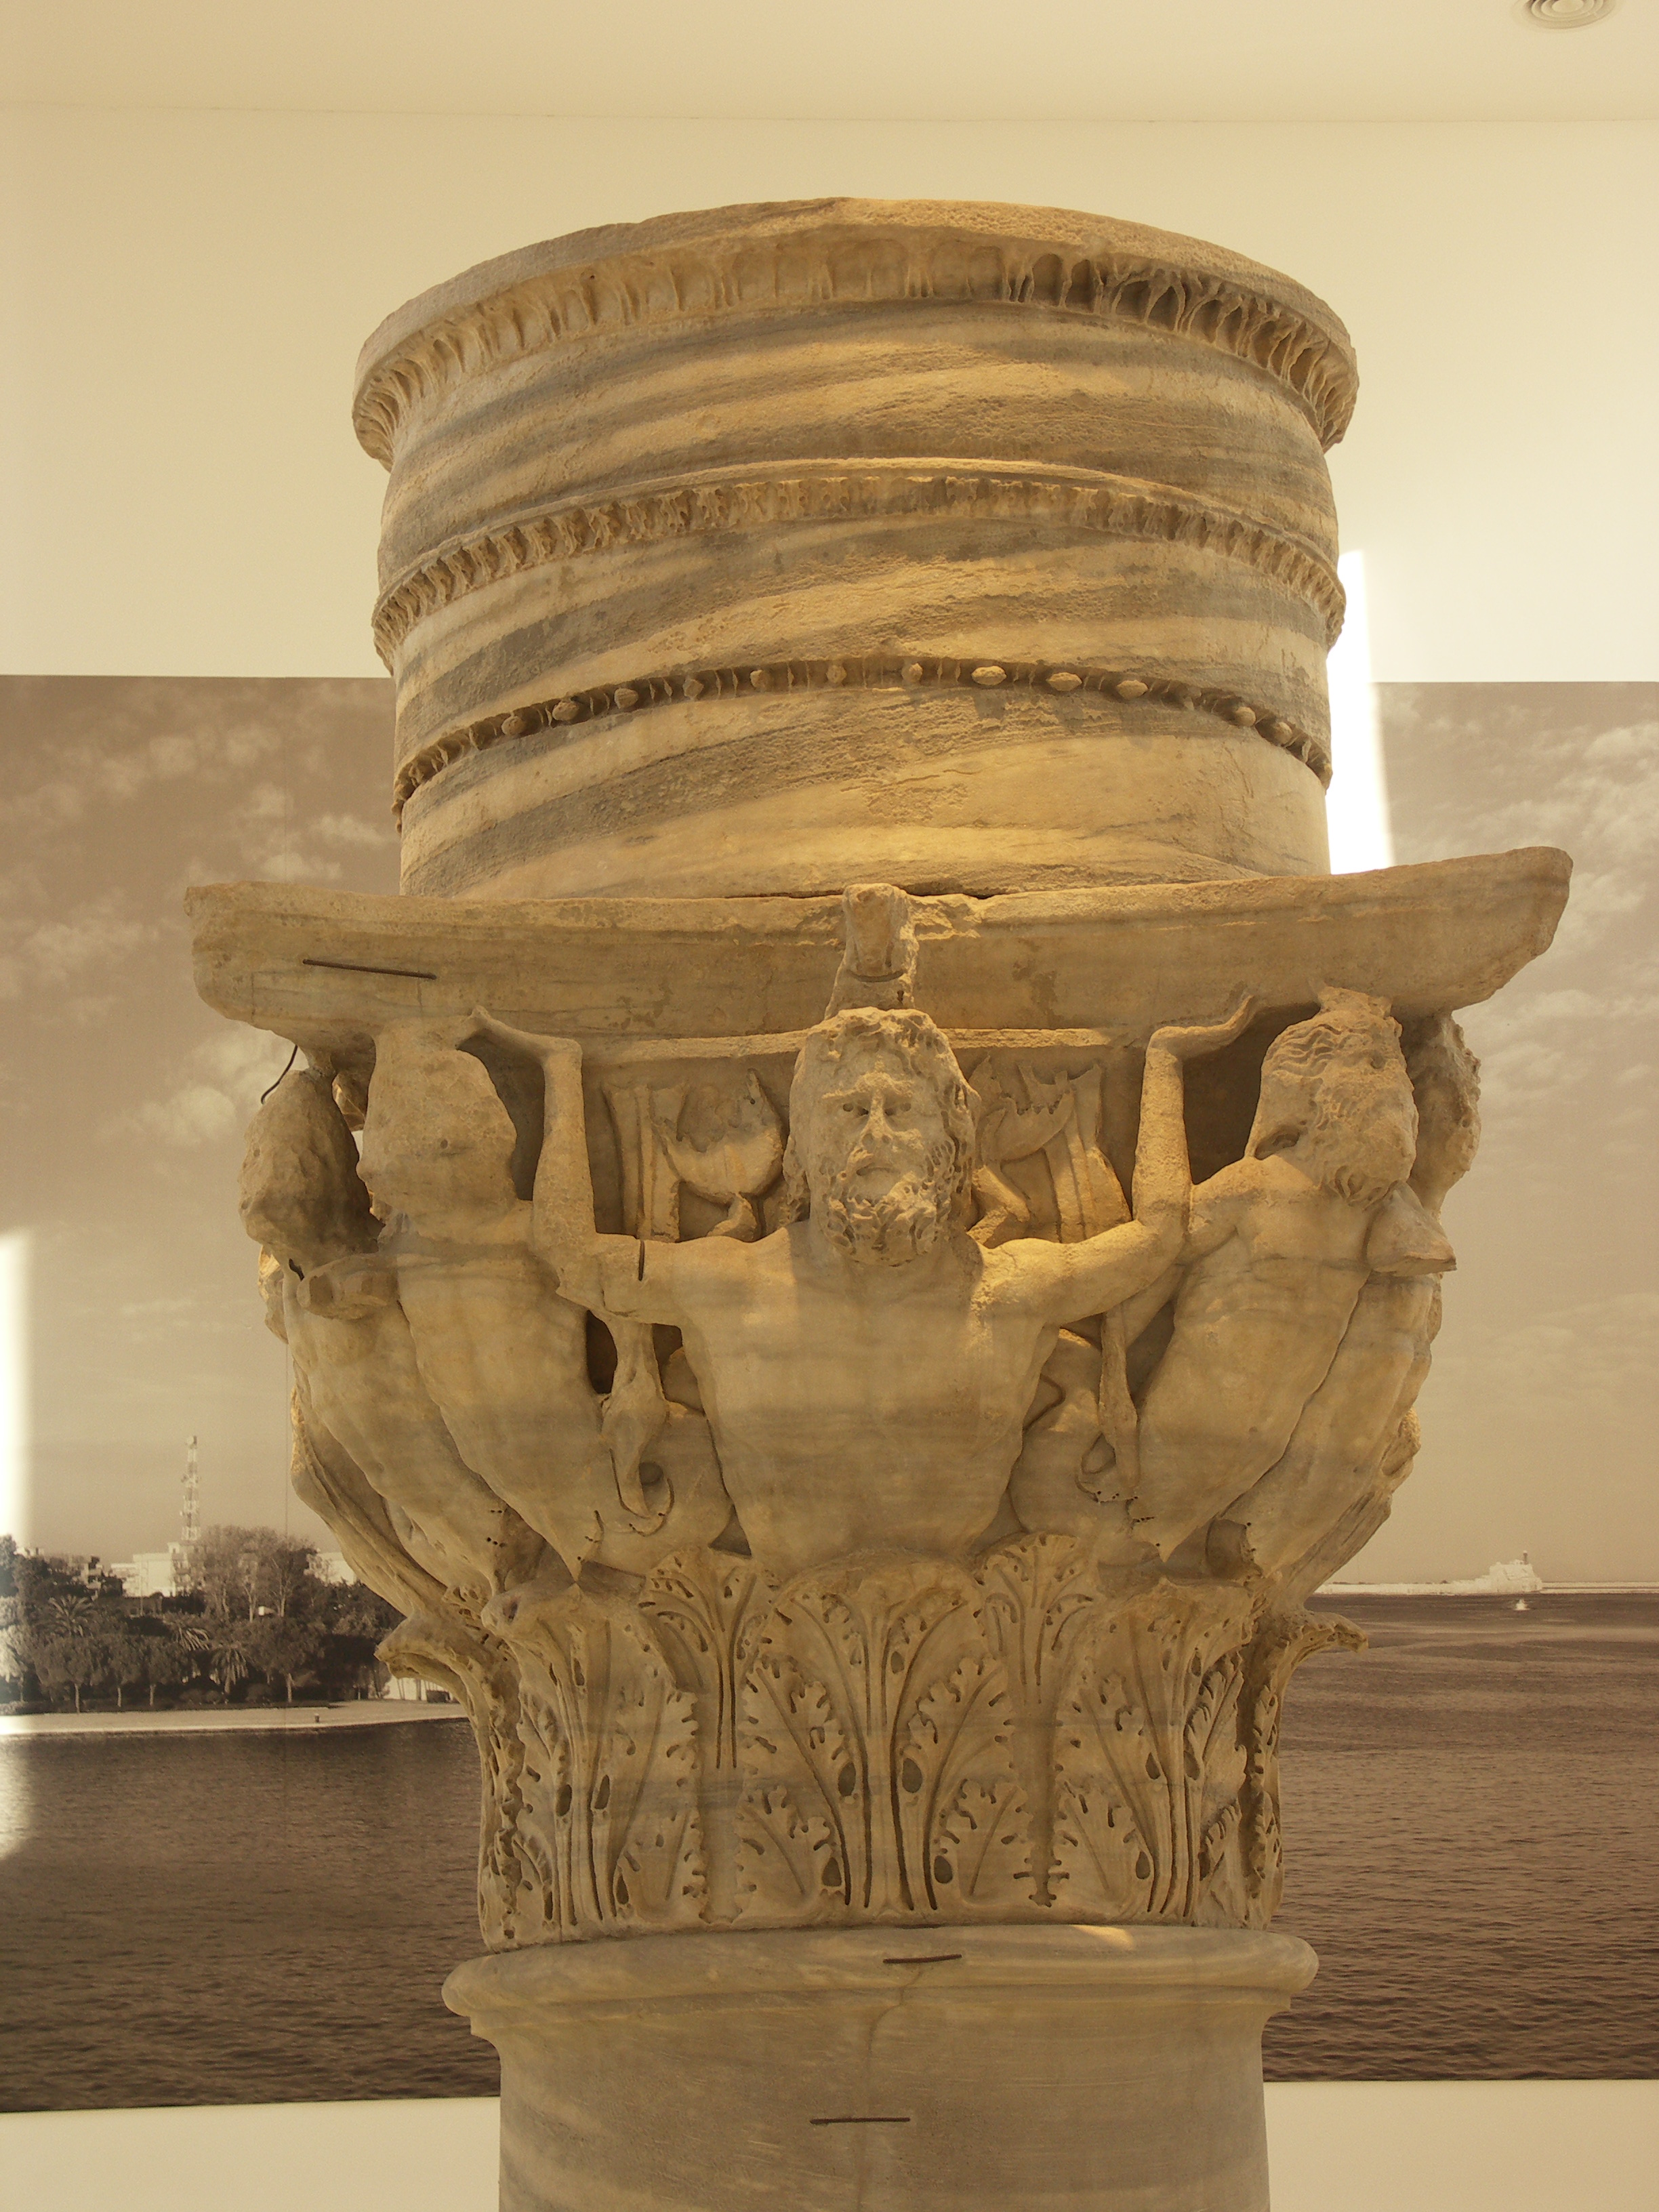 Roberto sernicola, Il capitello originale della colonna di Brindisi, conservato nel Palazzo Nervegna Granafei, fotografia digitale